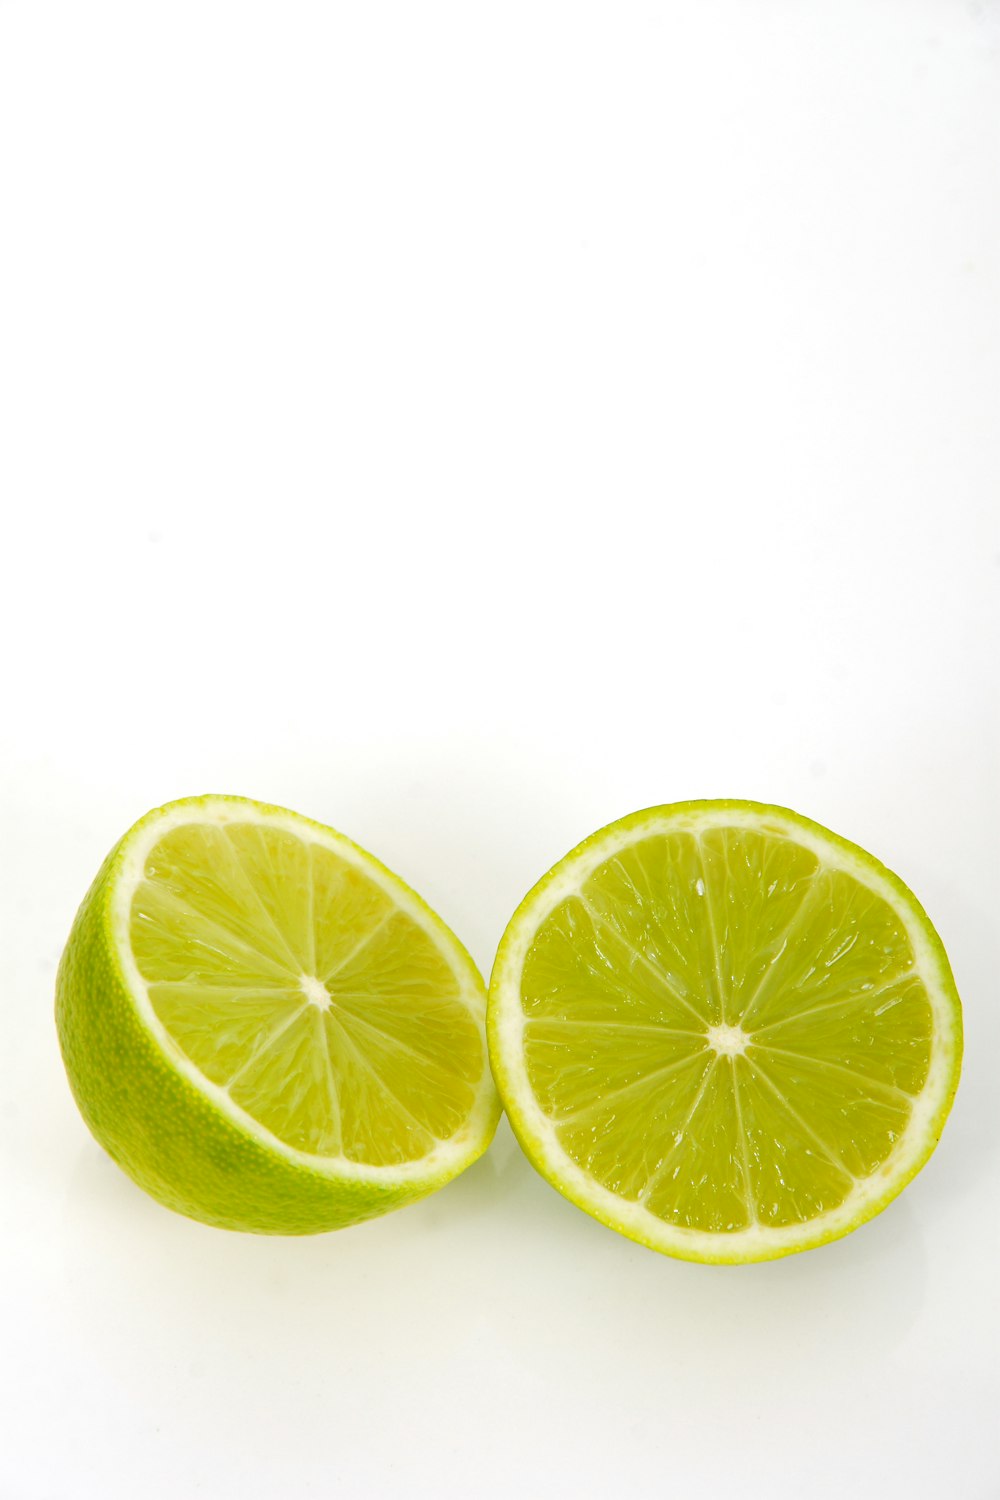 sliced lemon on white background